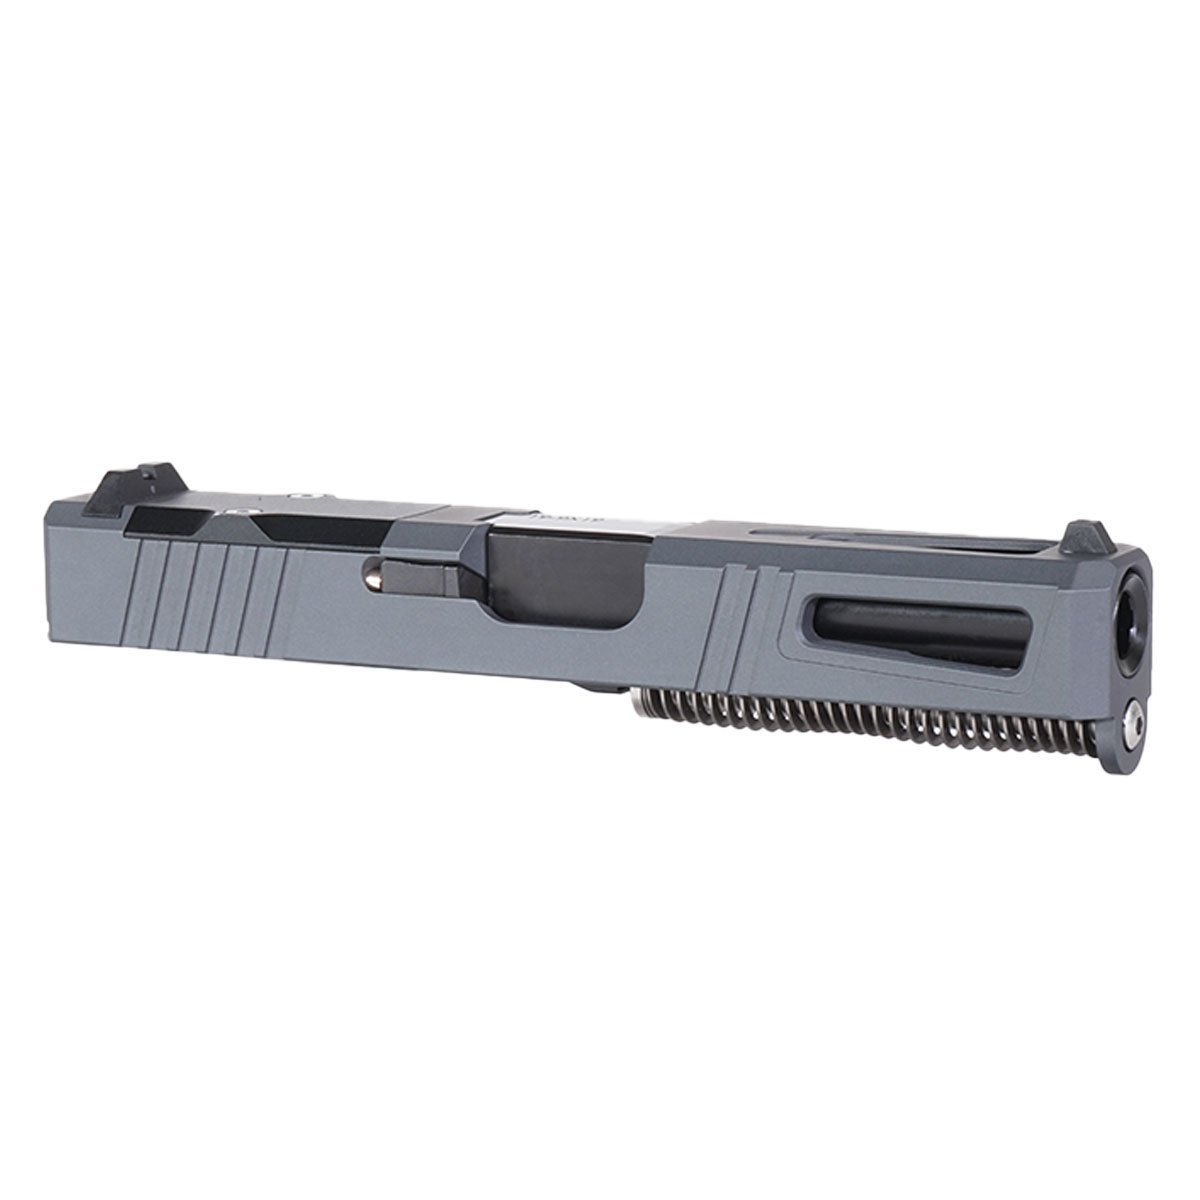 DTT 'Sneak Peek' 9mm Complete Slide Kit - Glock 19 Gen 1-3 Compatible